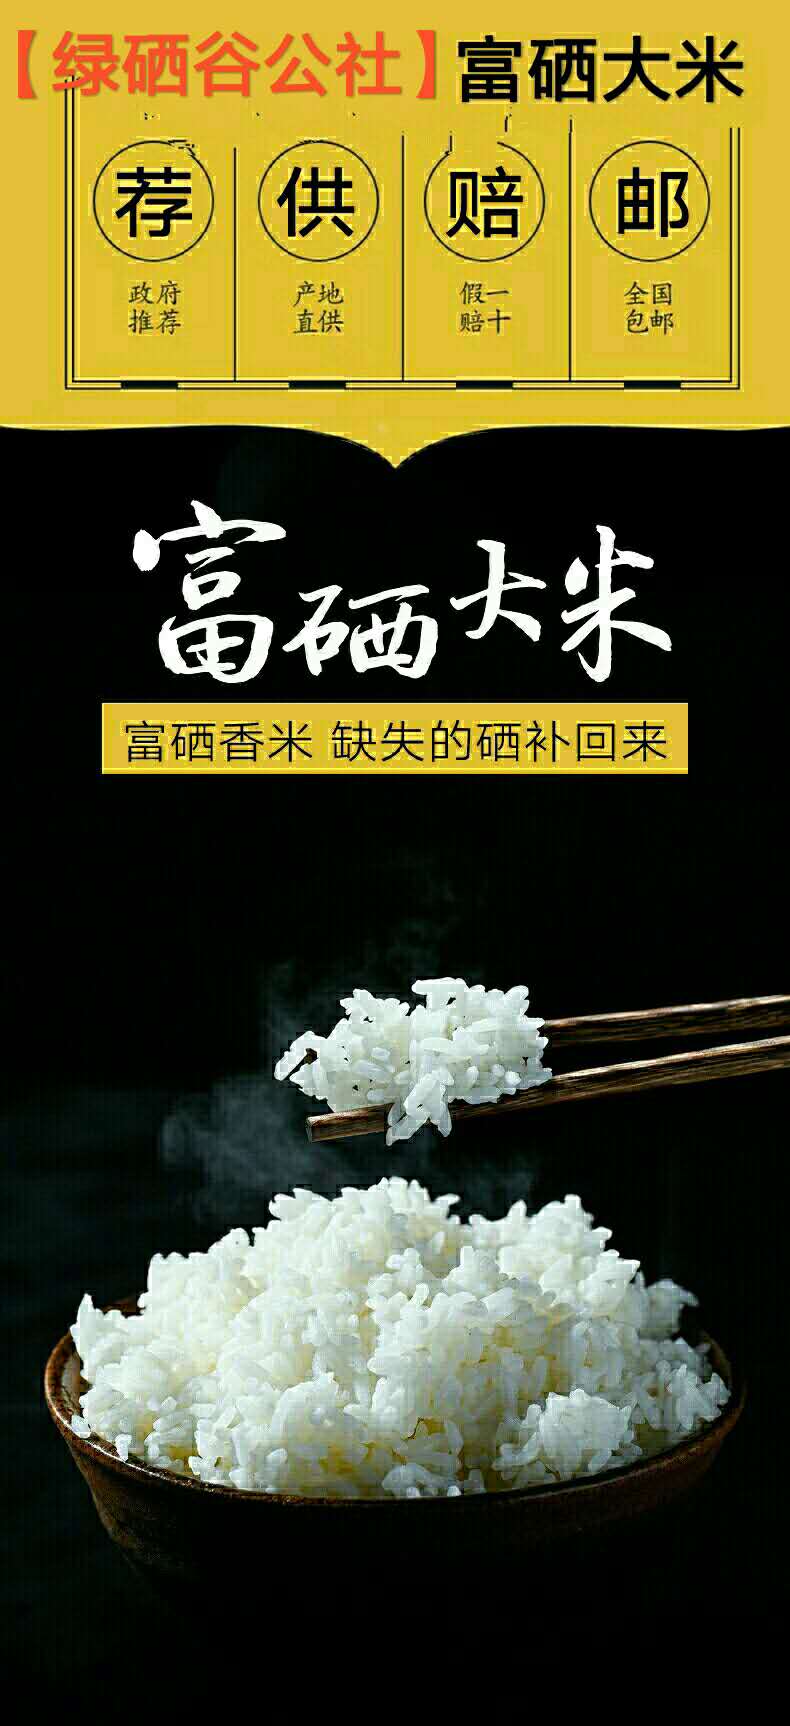 富硒大米食品标准